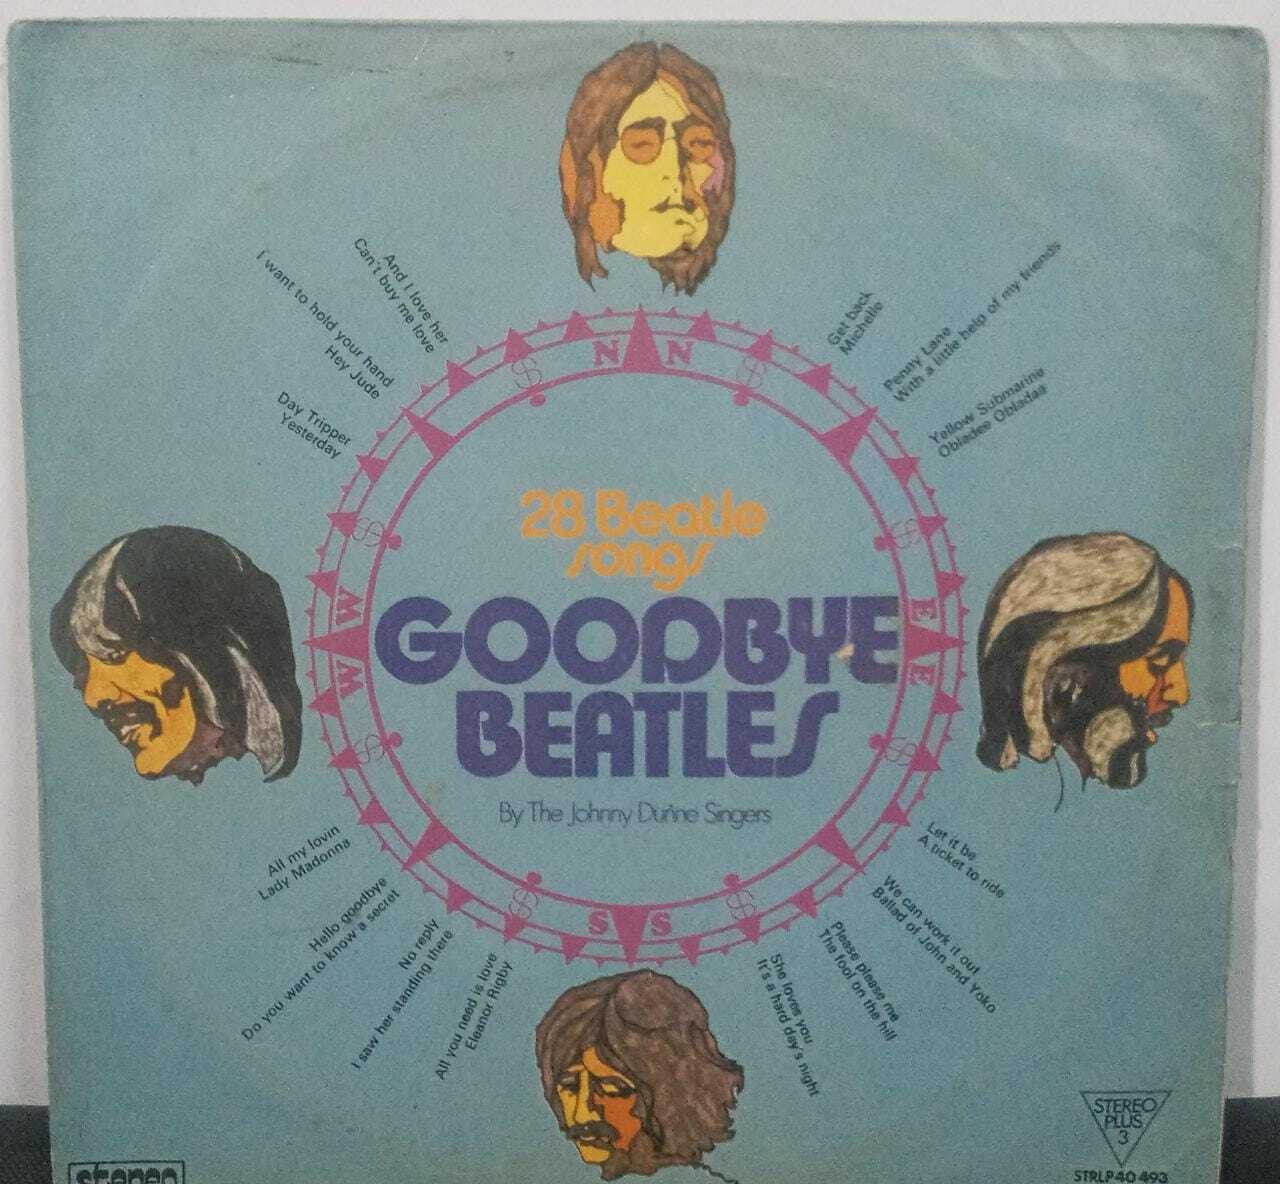 Vinil - Johnny Dunne Singers The - Goodbye Beatles